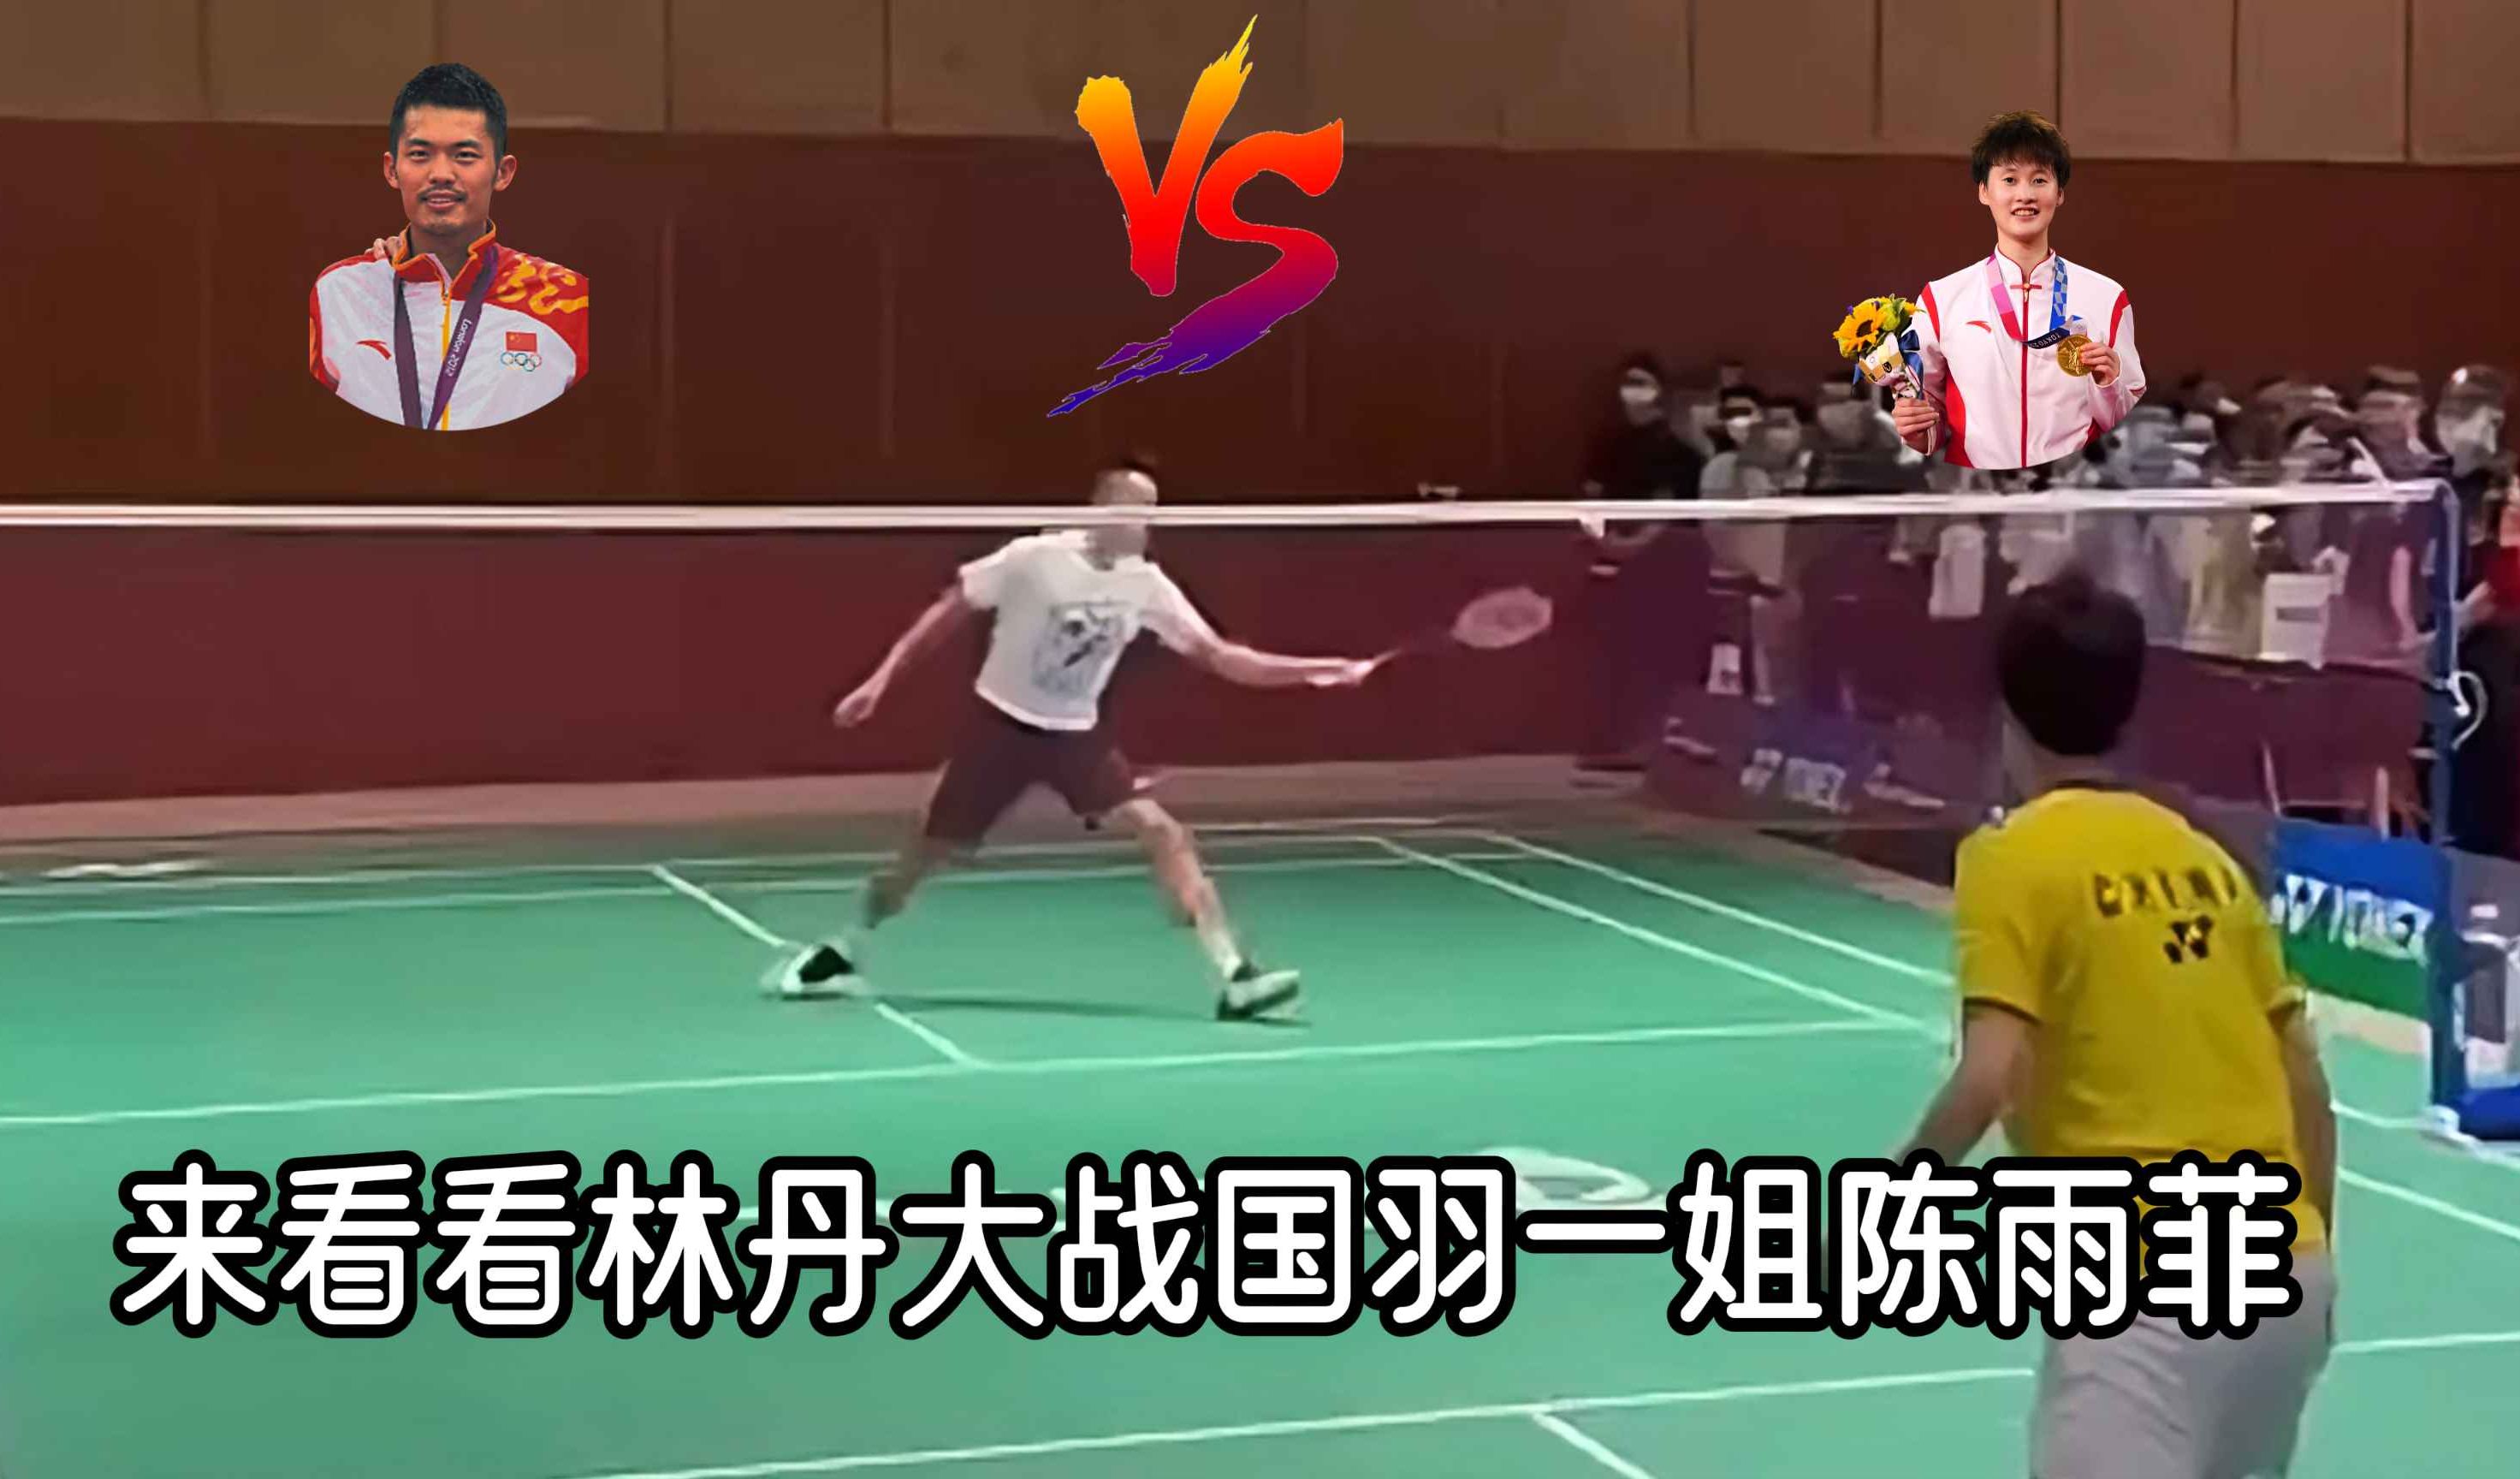 林丹 vs 陈雨菲